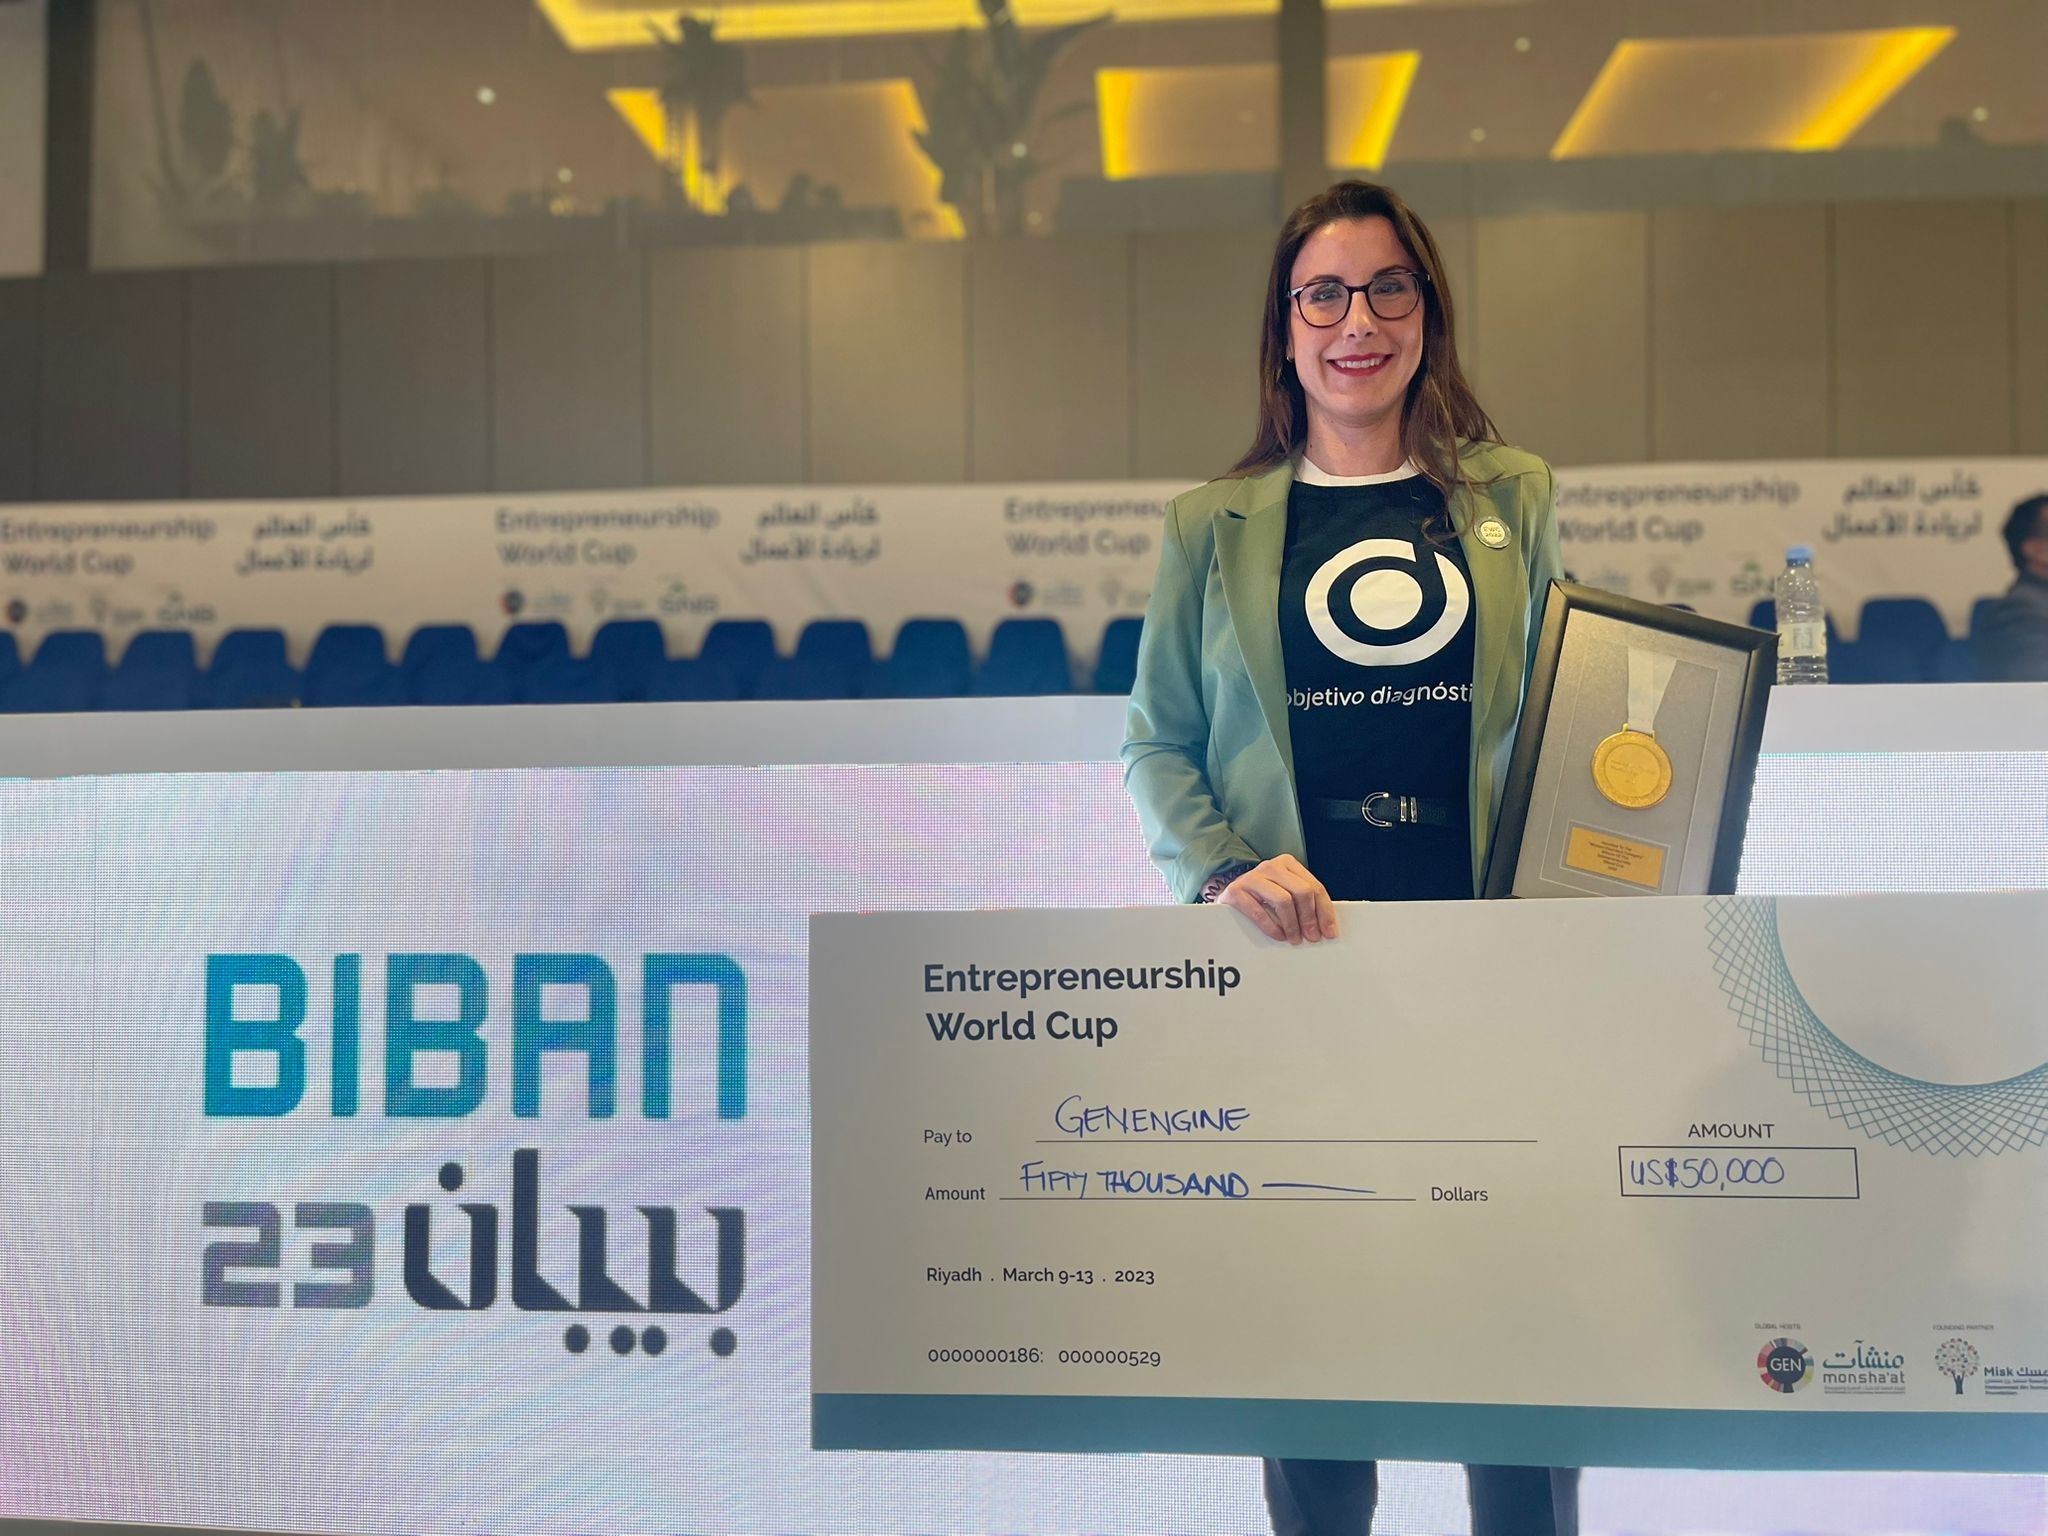 Uma startup andaluza apoiada pelo Conselho, entre os vencedores da grande final da Copa do Mundo de Empreendedorismo em Riade